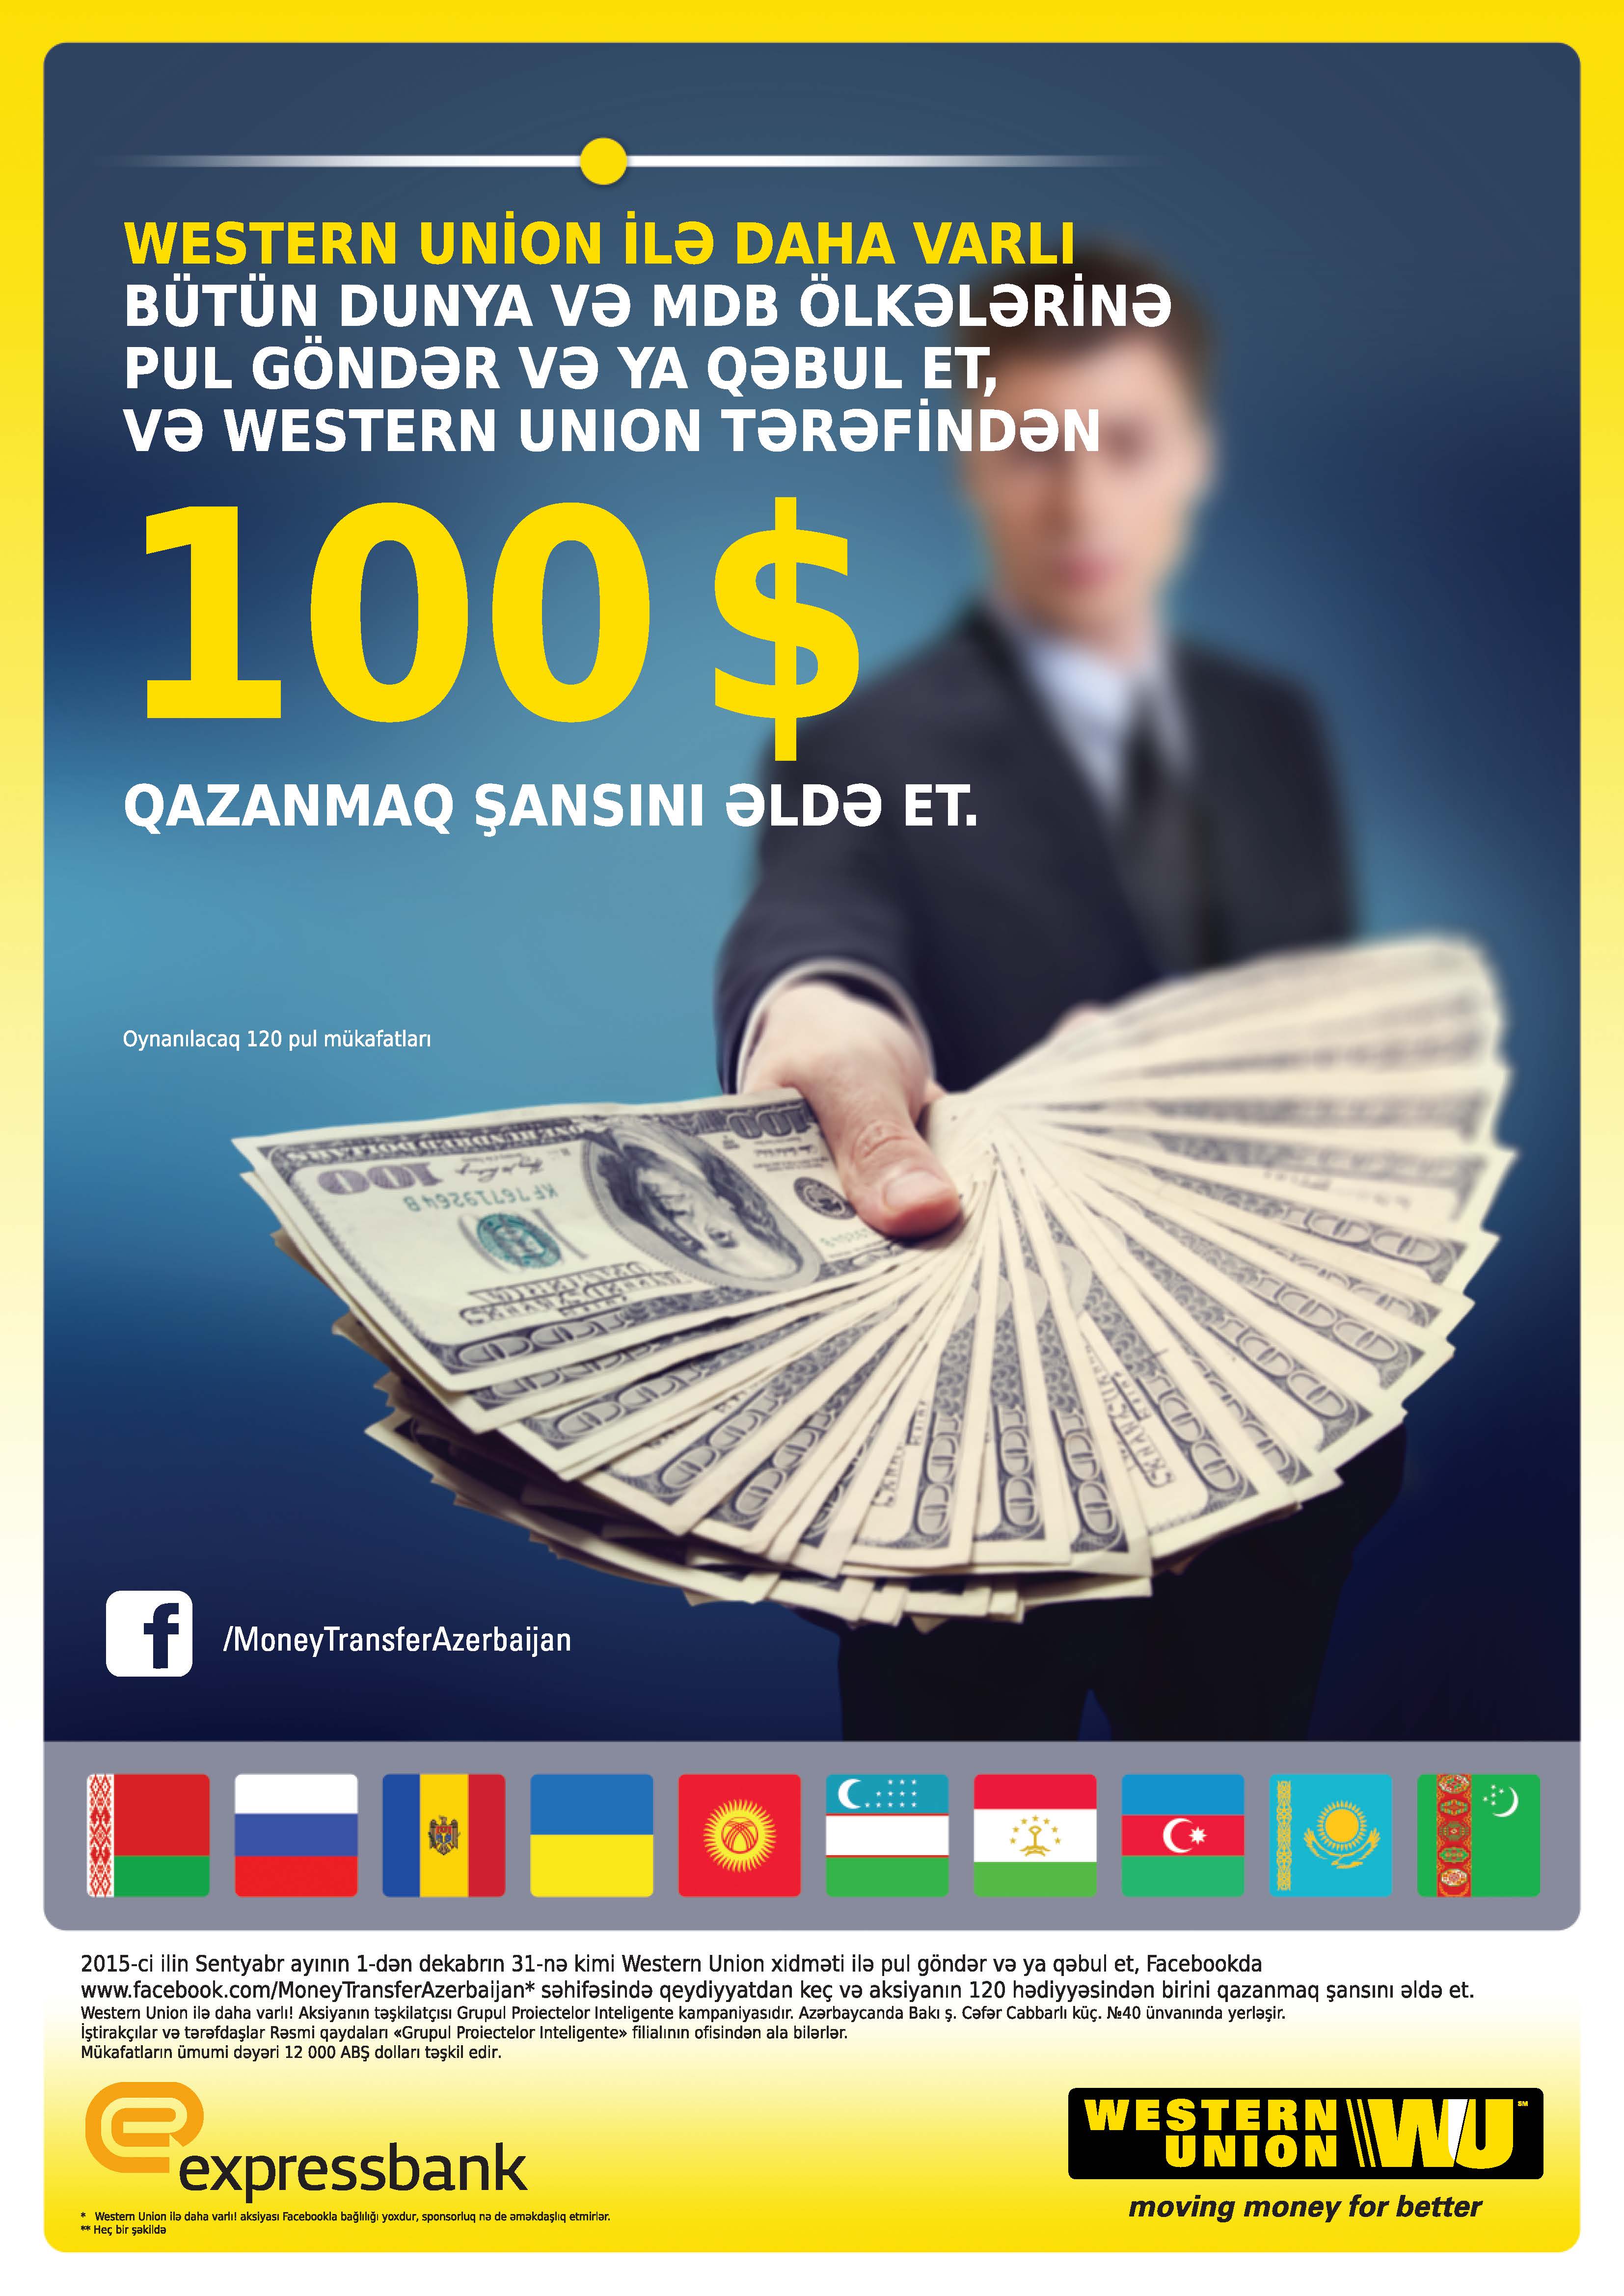 Expressbank проводит акцию совместно с WesternUnion